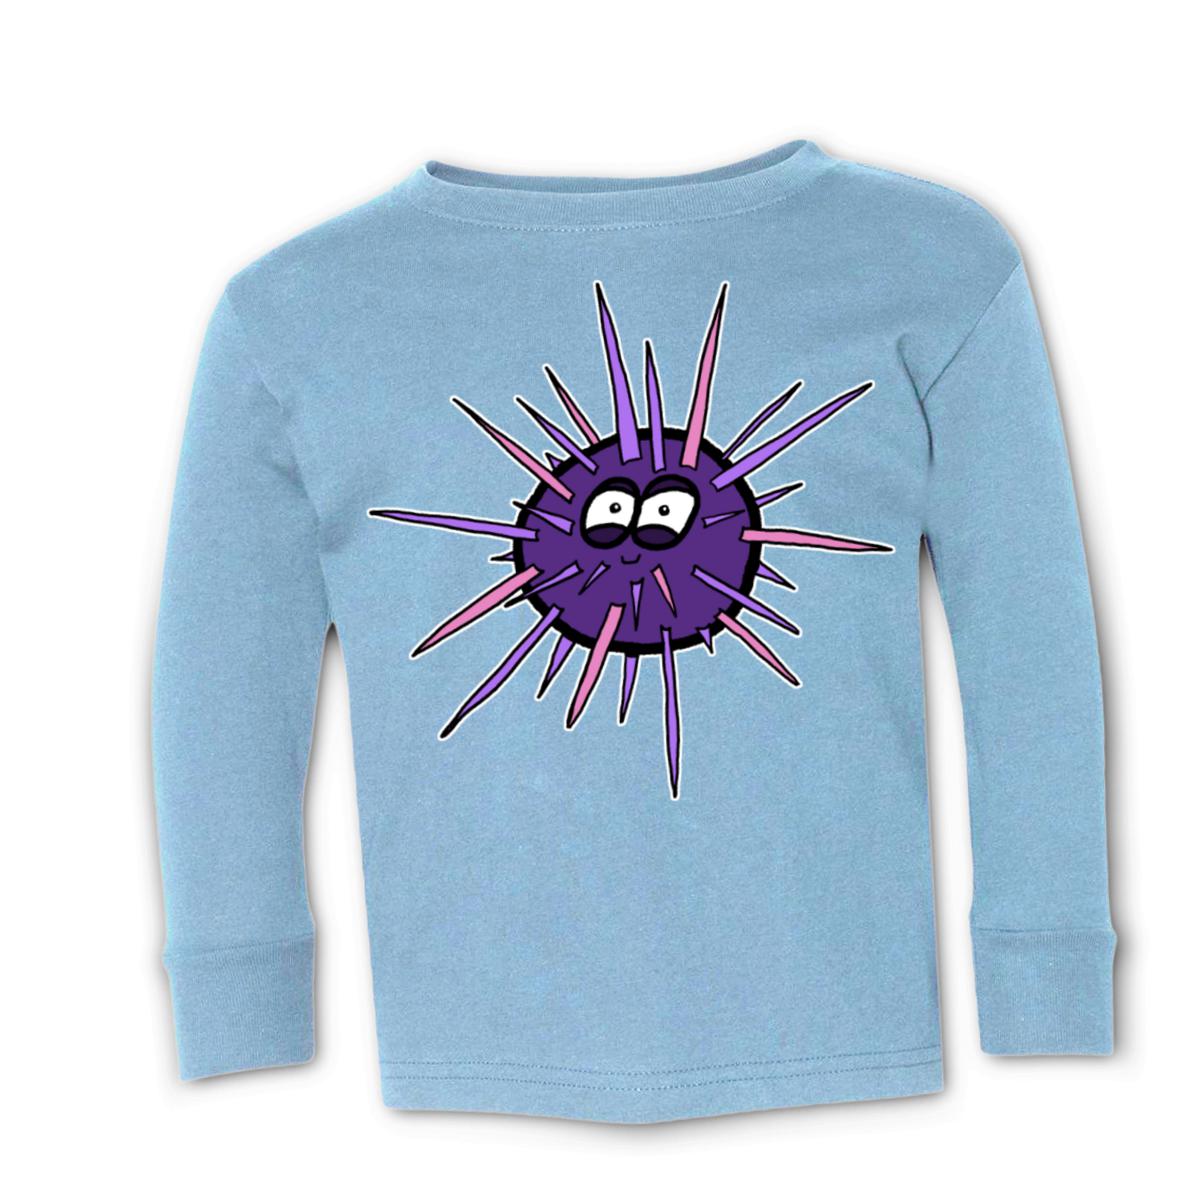 Sea Urchin Toddler Long Sleeve Tee 56T light-blue